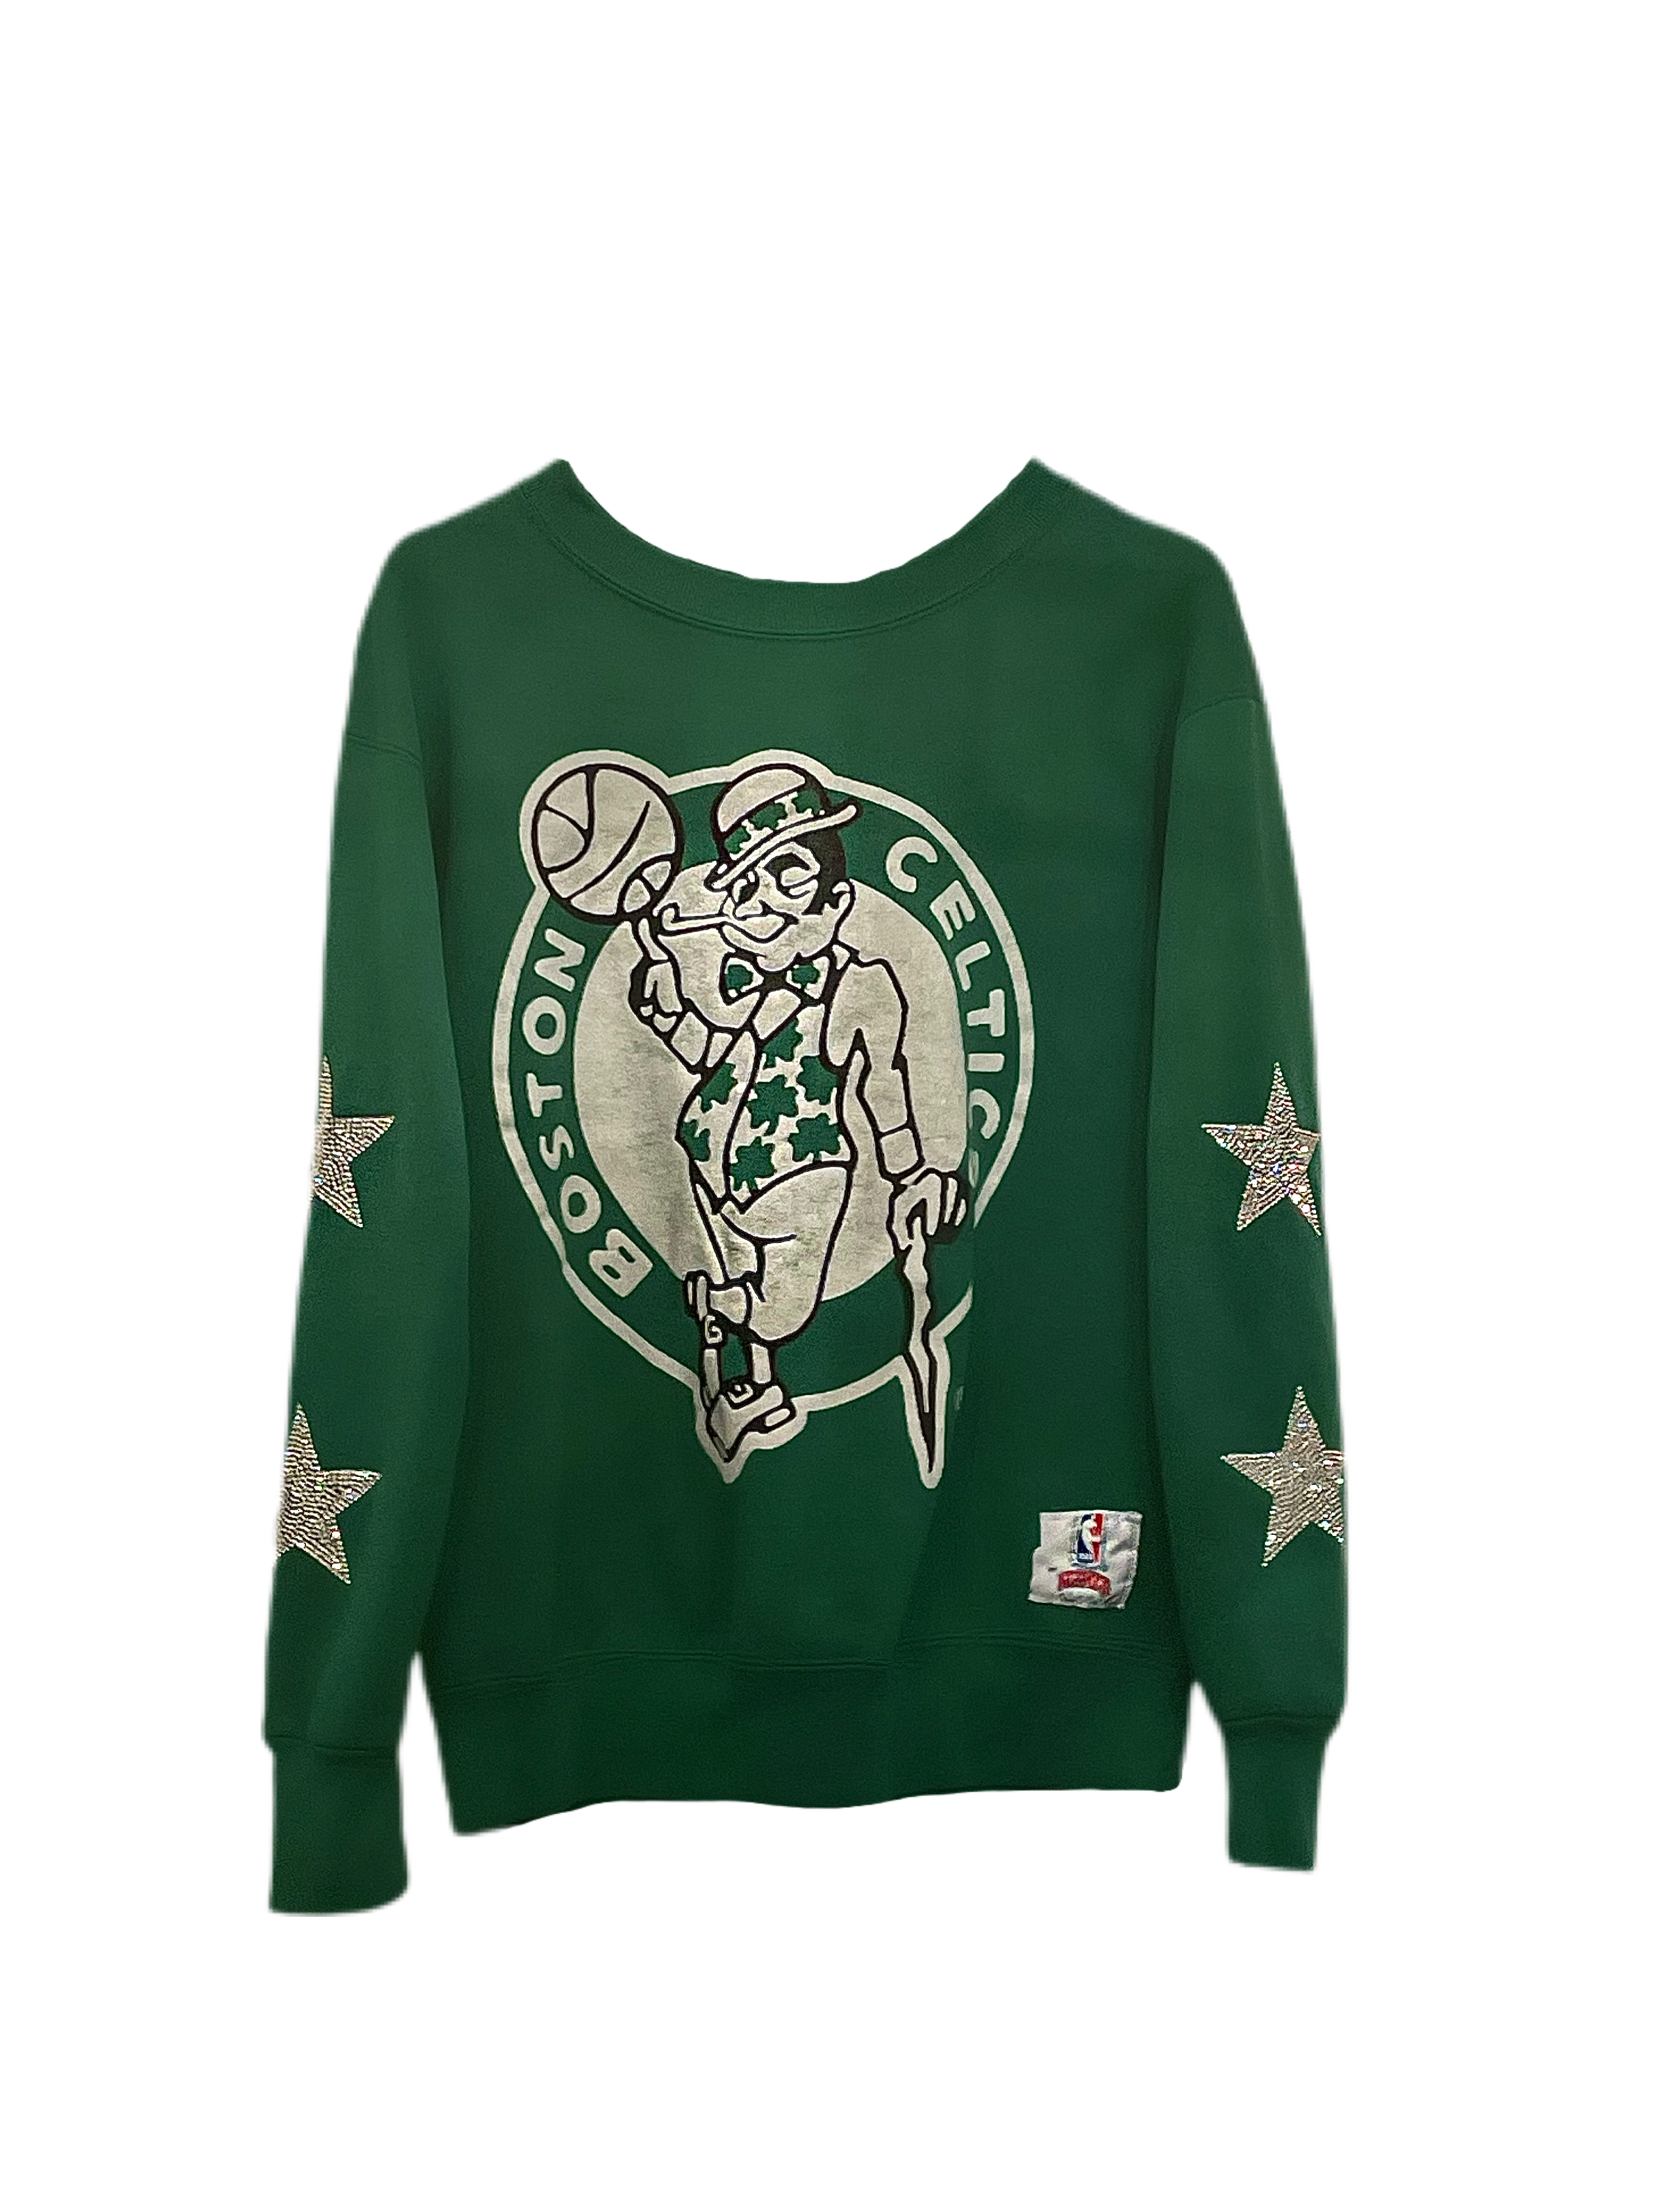 Boston Celtics, NBA One of a KIND Vintage Sweatshirt with Crystal